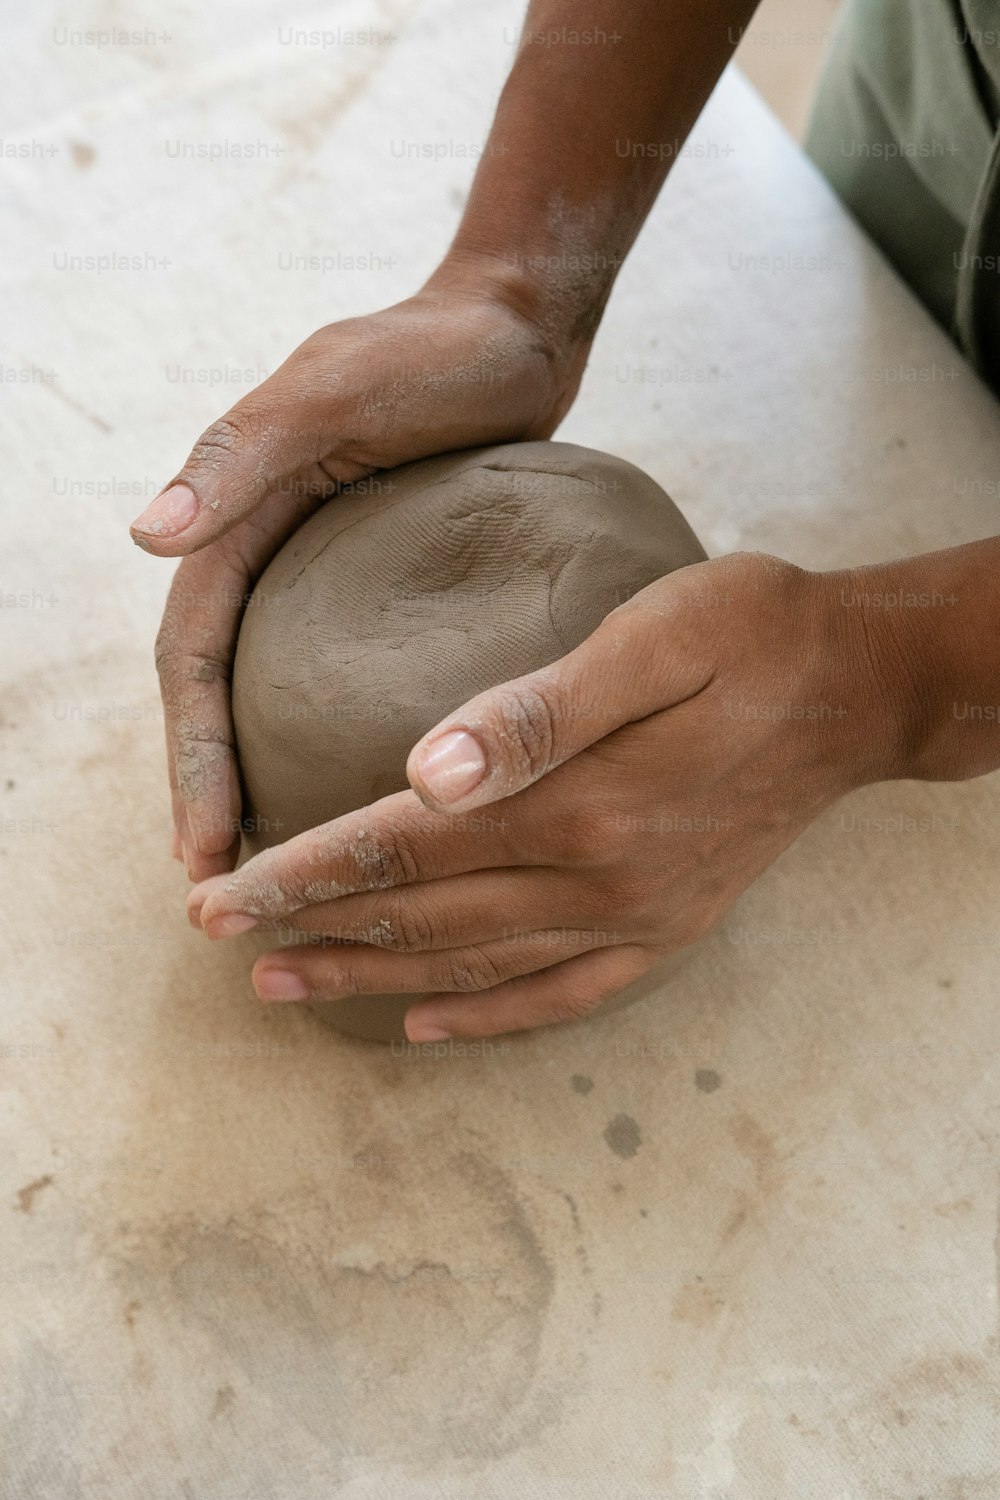 una persona sosteniendo una bola de arcilla en sus manos